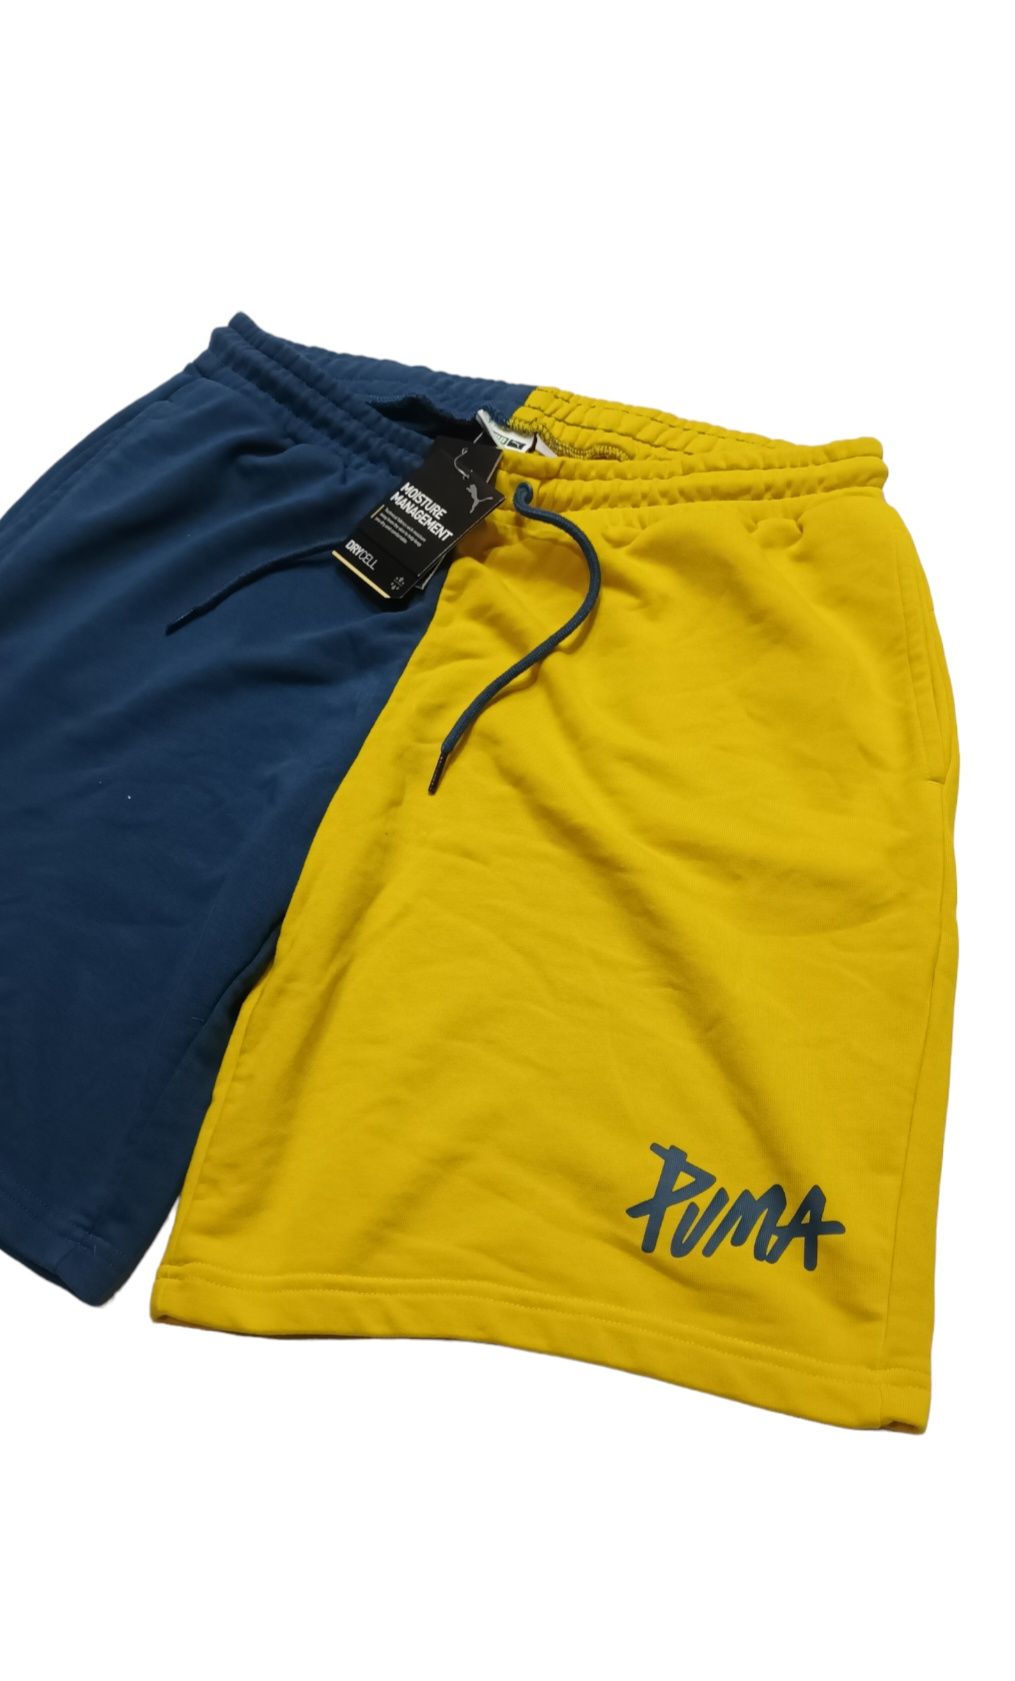 Мъжки комплект Puma от две части - тениска и къси панталони L